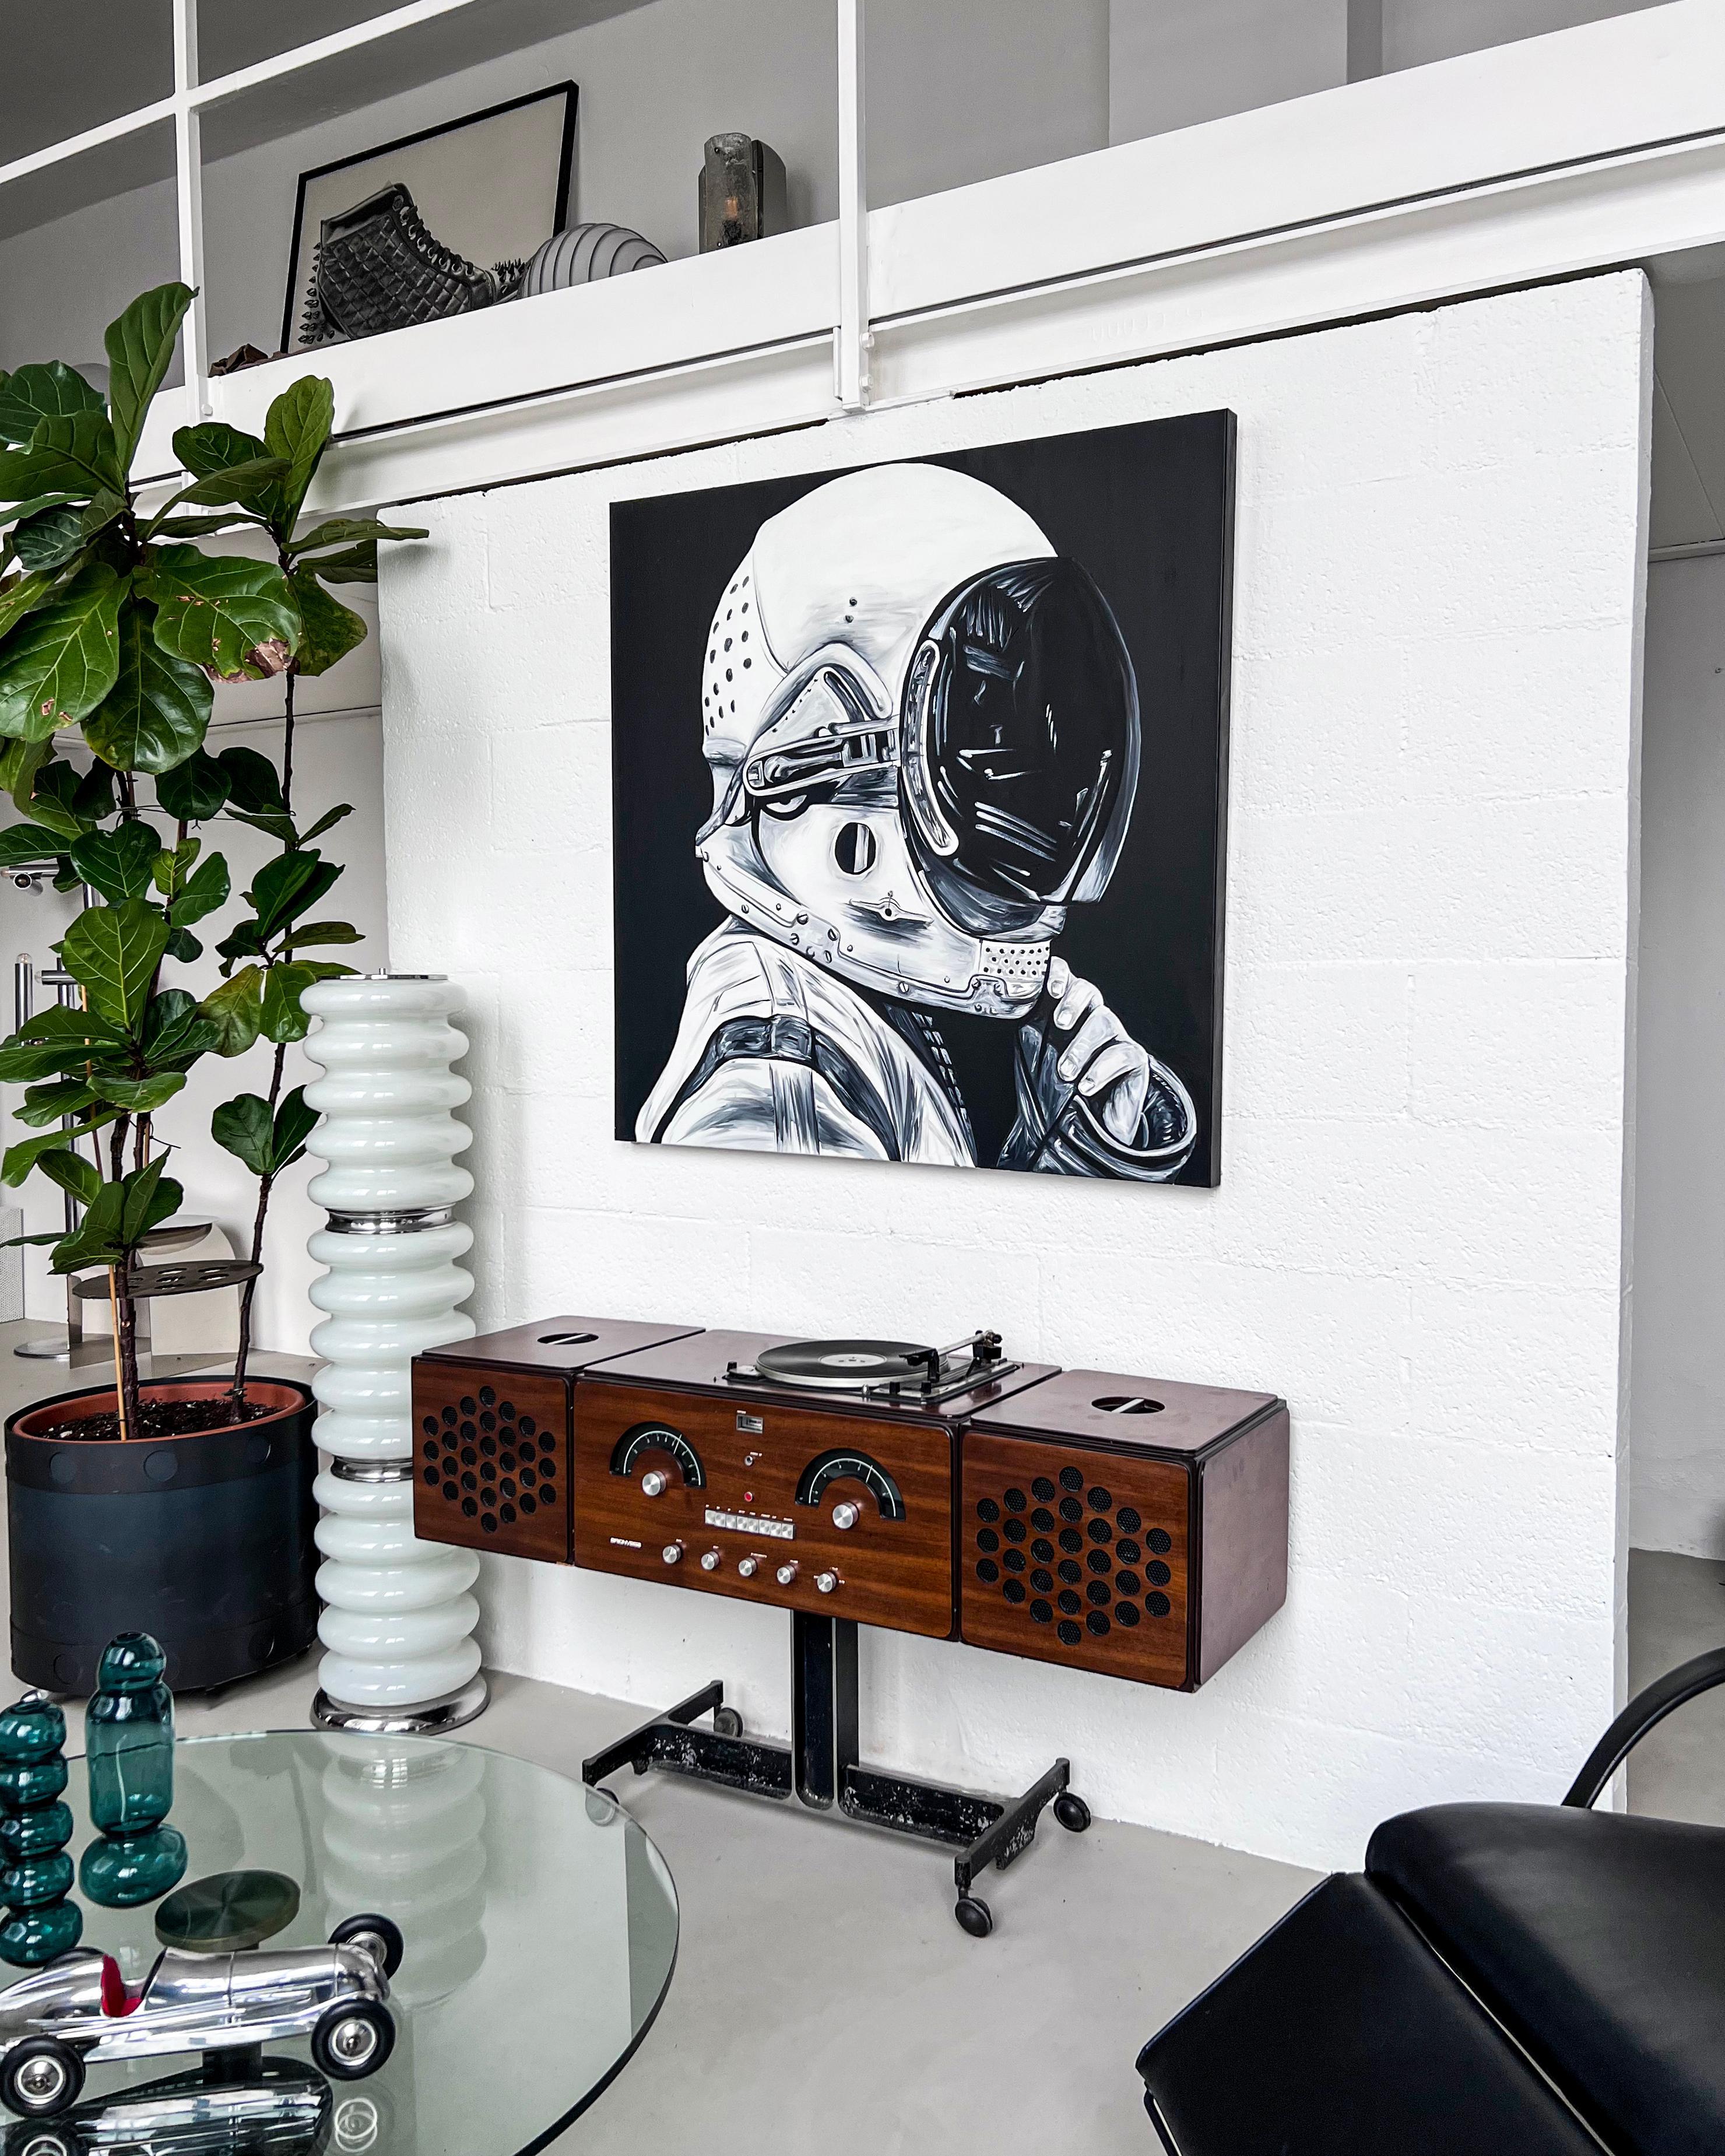 Zeitgenössisches Kunstwerk - Astronaut - Kosmonaut von Ricardo Rodriguez

Schwarz-weißes Originalgemälde (kein Druck), das einen Kosmonauten in seinem Raumanzug und Helm zeigt. Es ist das Werk des spanischen Künstlers Ricardo Rodriguez und misst